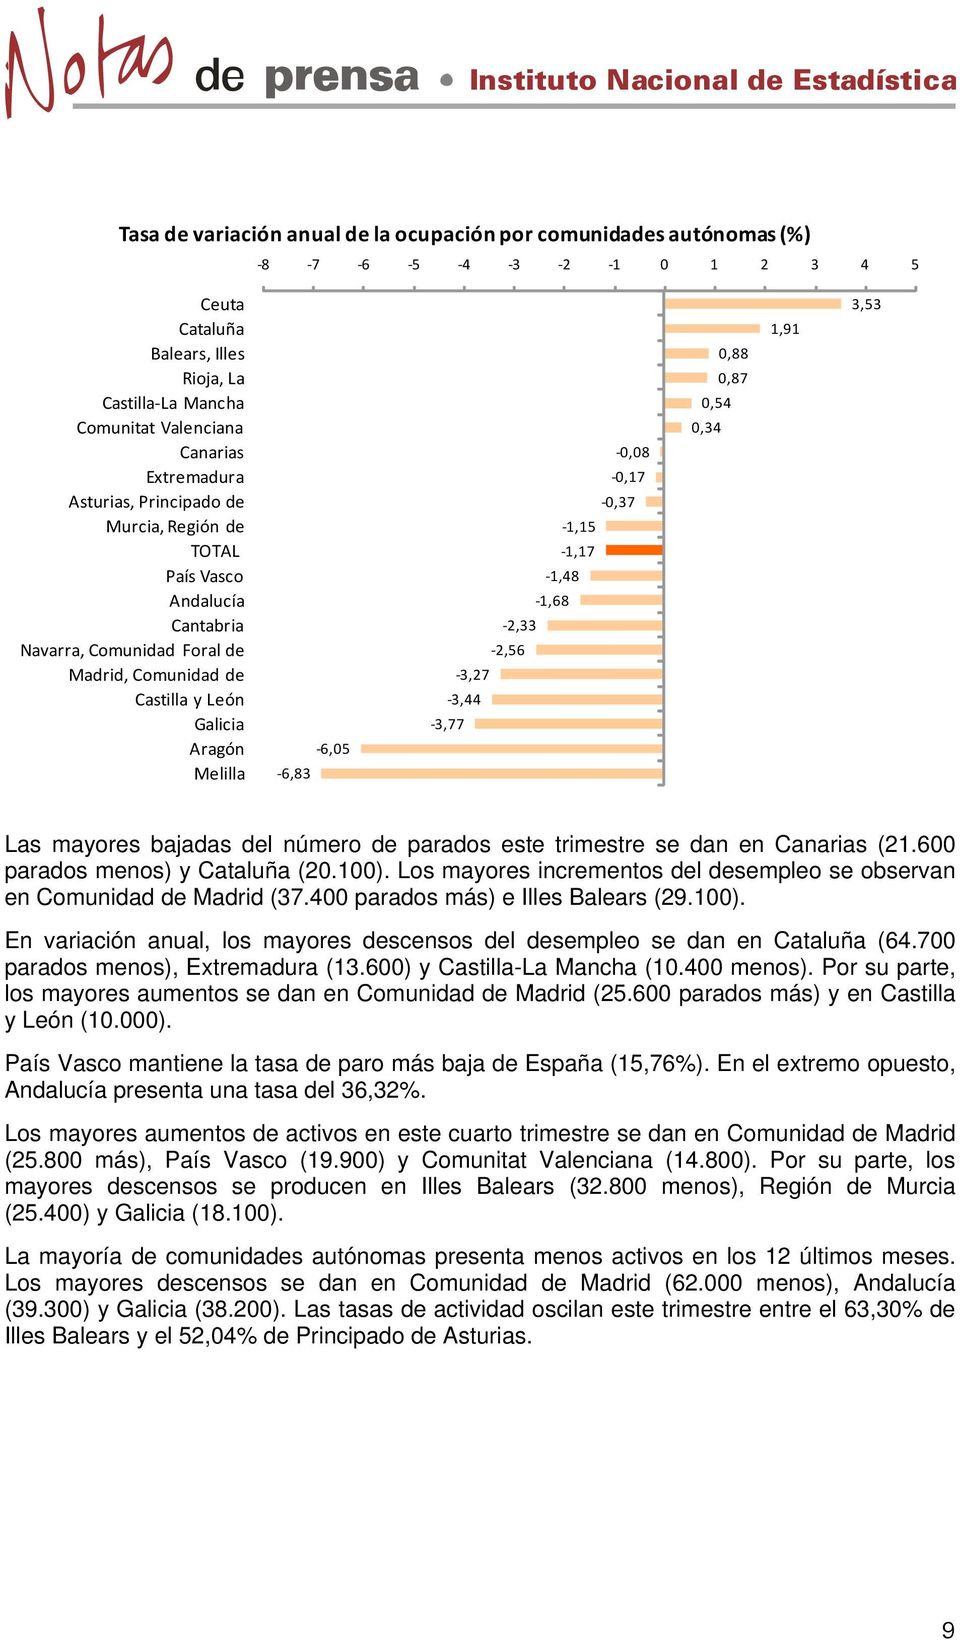 1,17 1,48 1,68 2,33 2,56 3,27 3,44 3,77 0,88 0,87 0,54 0,34 1,91 3,53 Las mayores bajadas del número de parados este trimestre se dan en Canarias (21.600 parados menos) y Cataluña (20.100).